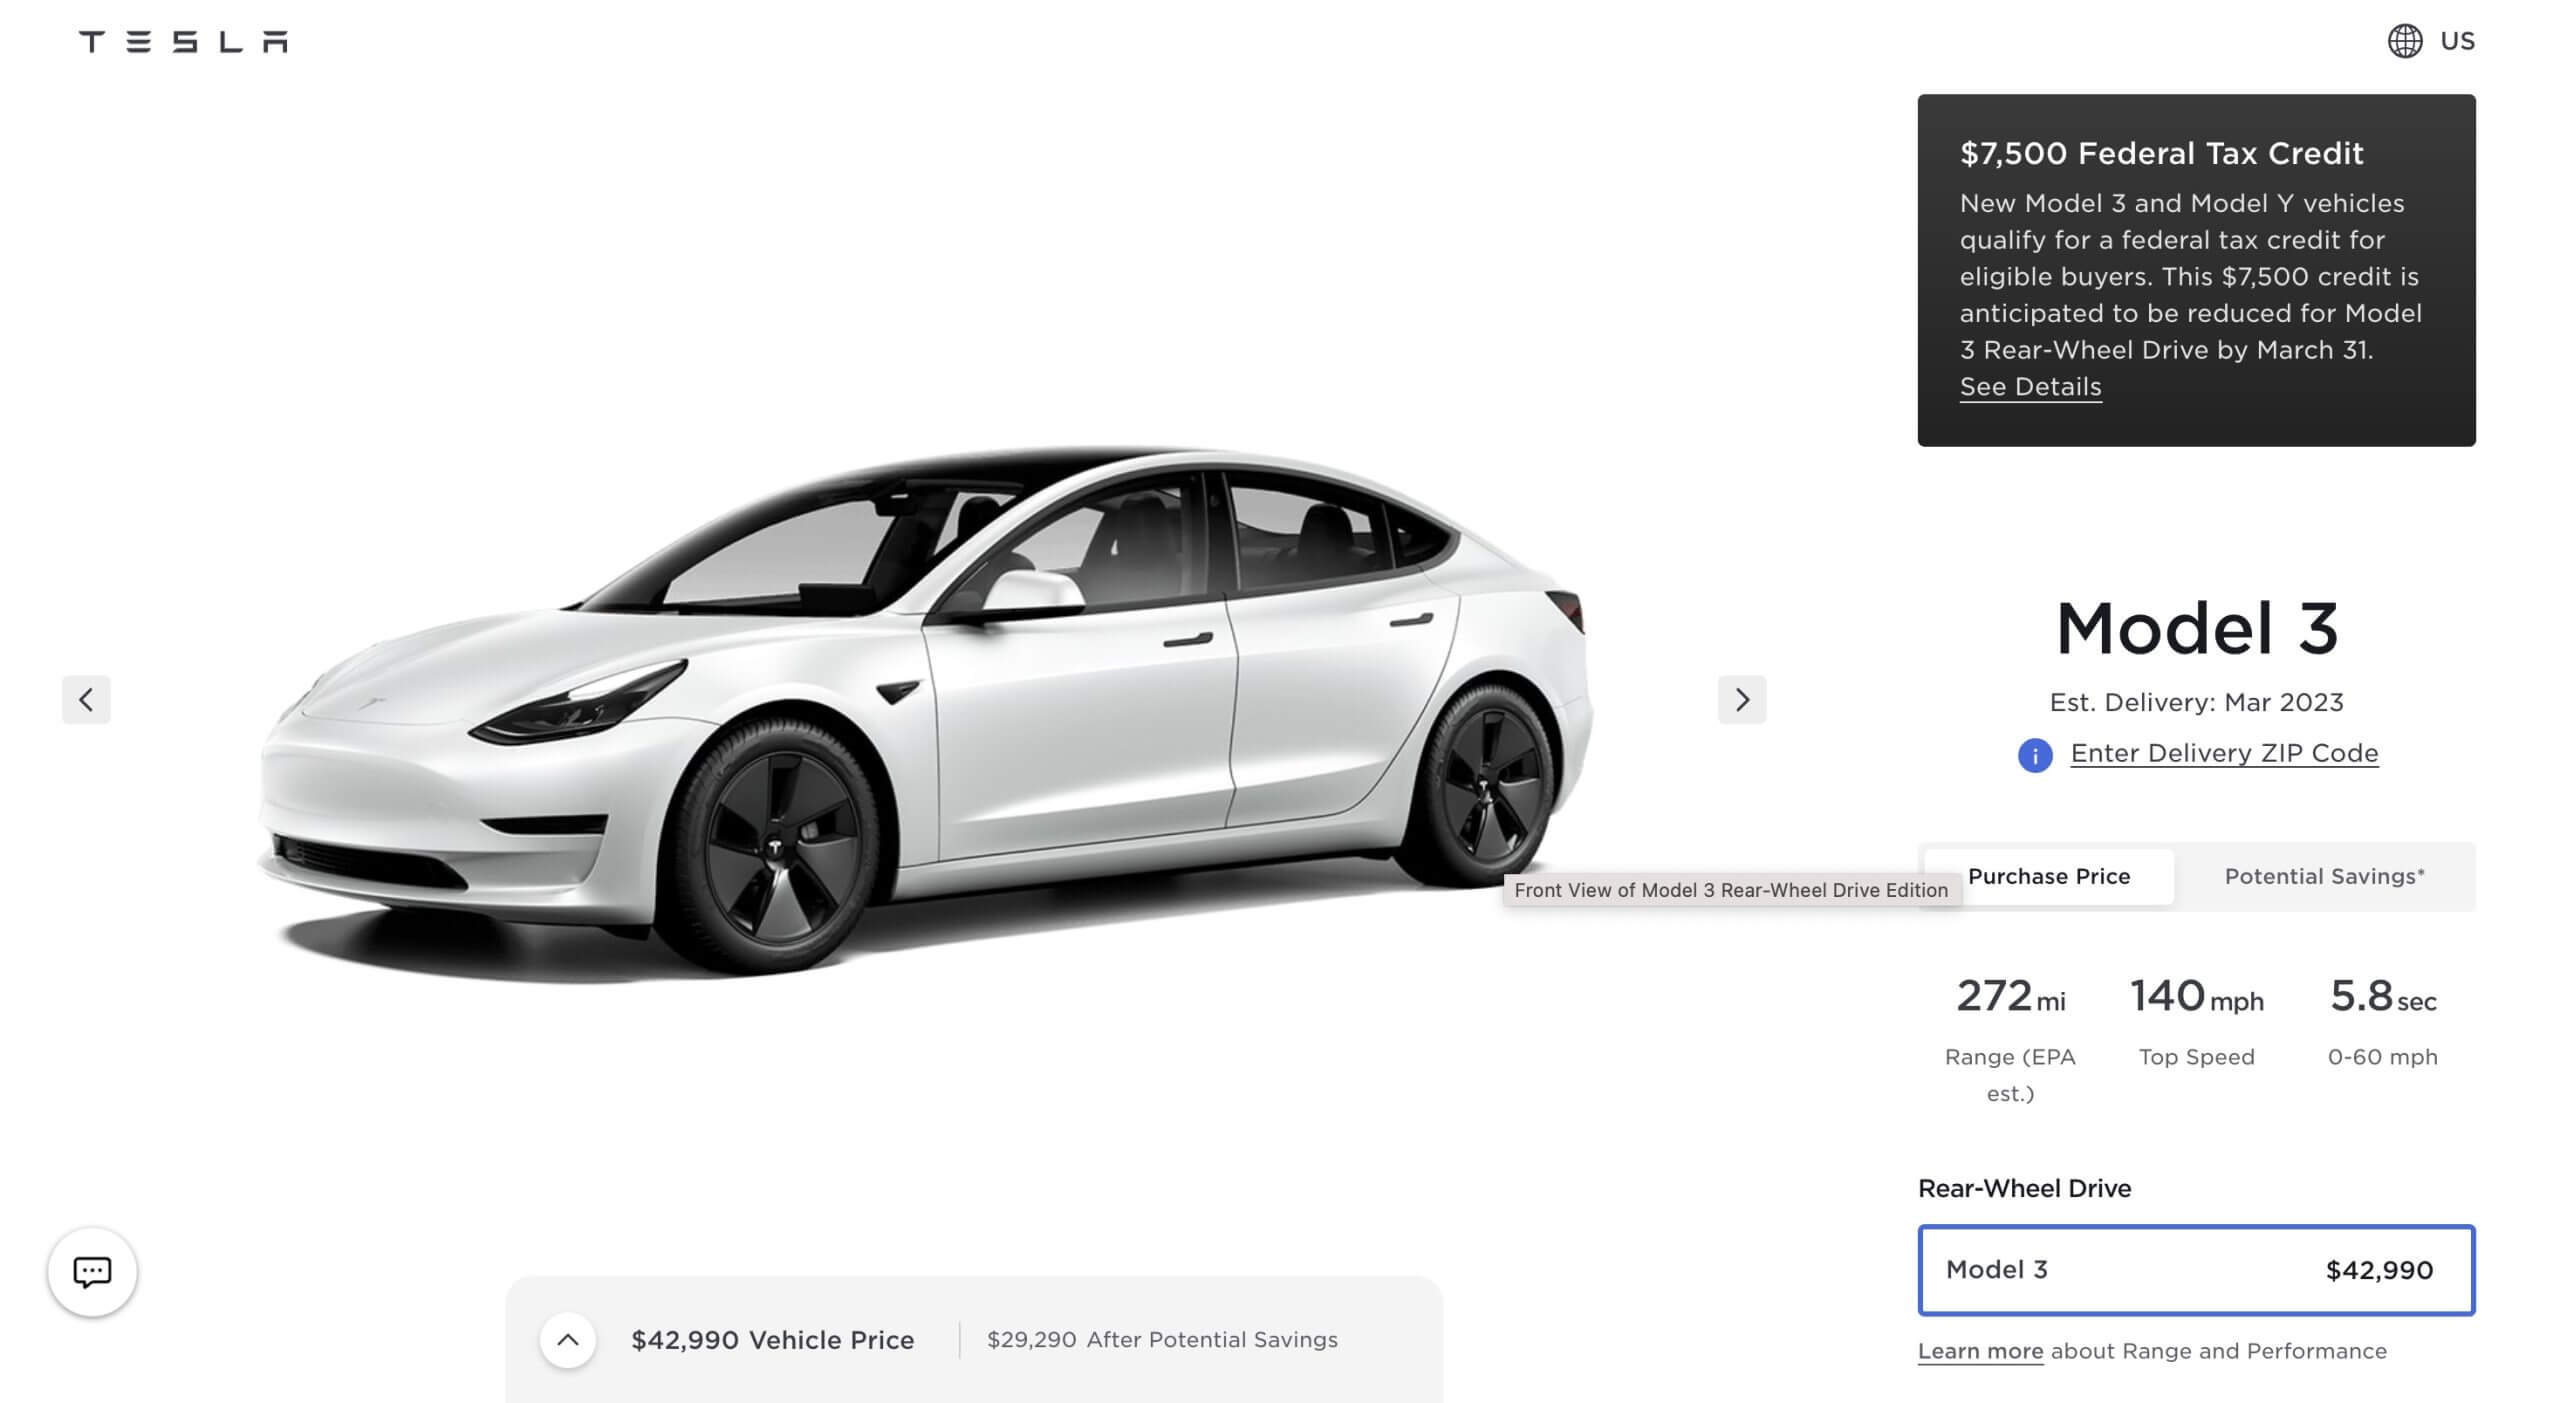 Податкові кредити на електромобілі Tesla Model 3 RWD у розмірі 7500 доларів США будуть зменшені